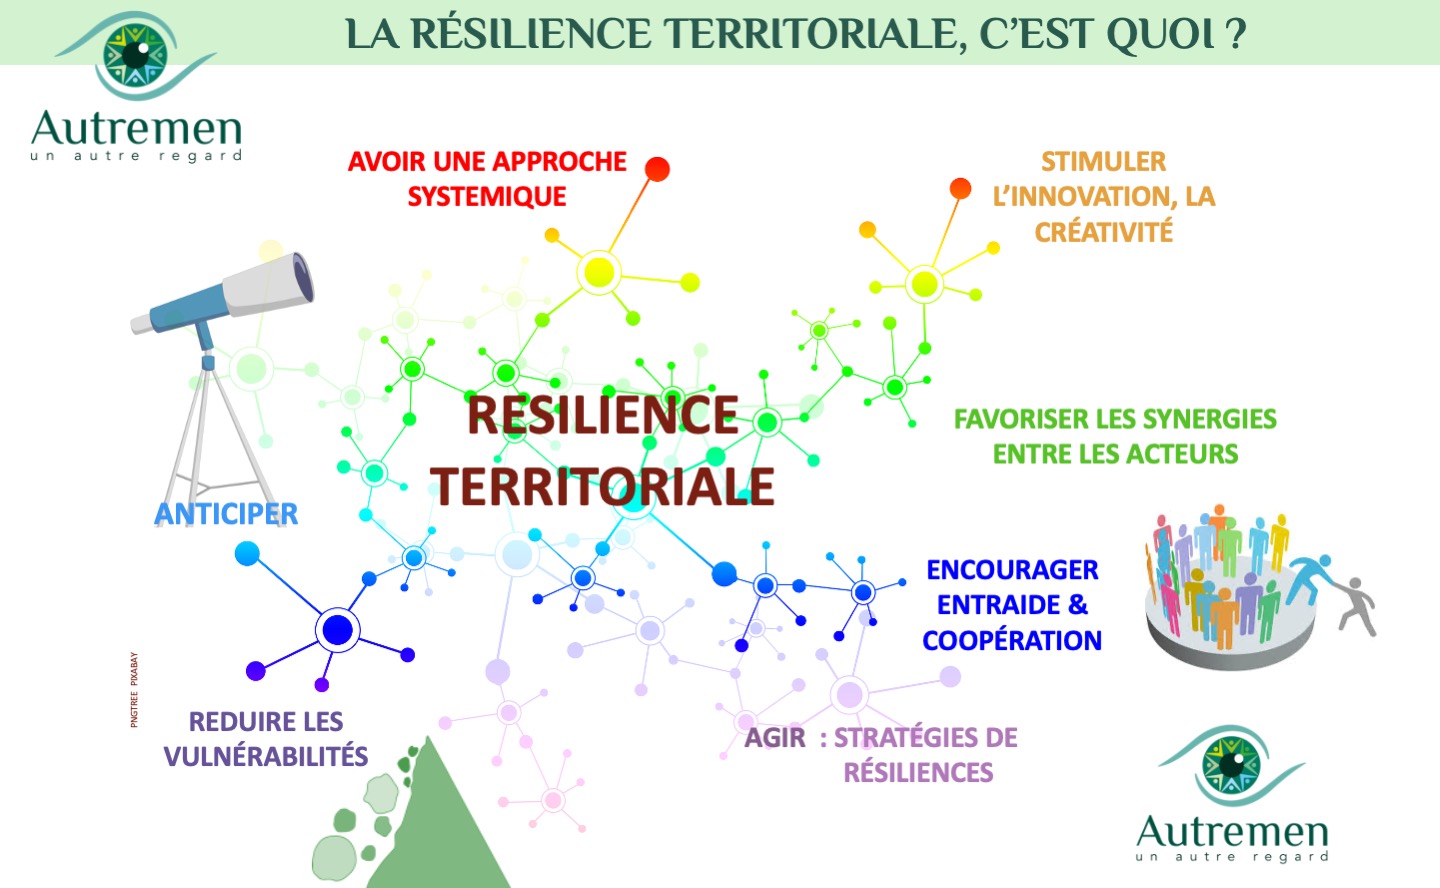 Le sujet de la résilience territoriale est un sujet général qui s’impose comme le moyen de traverser les crises successives.